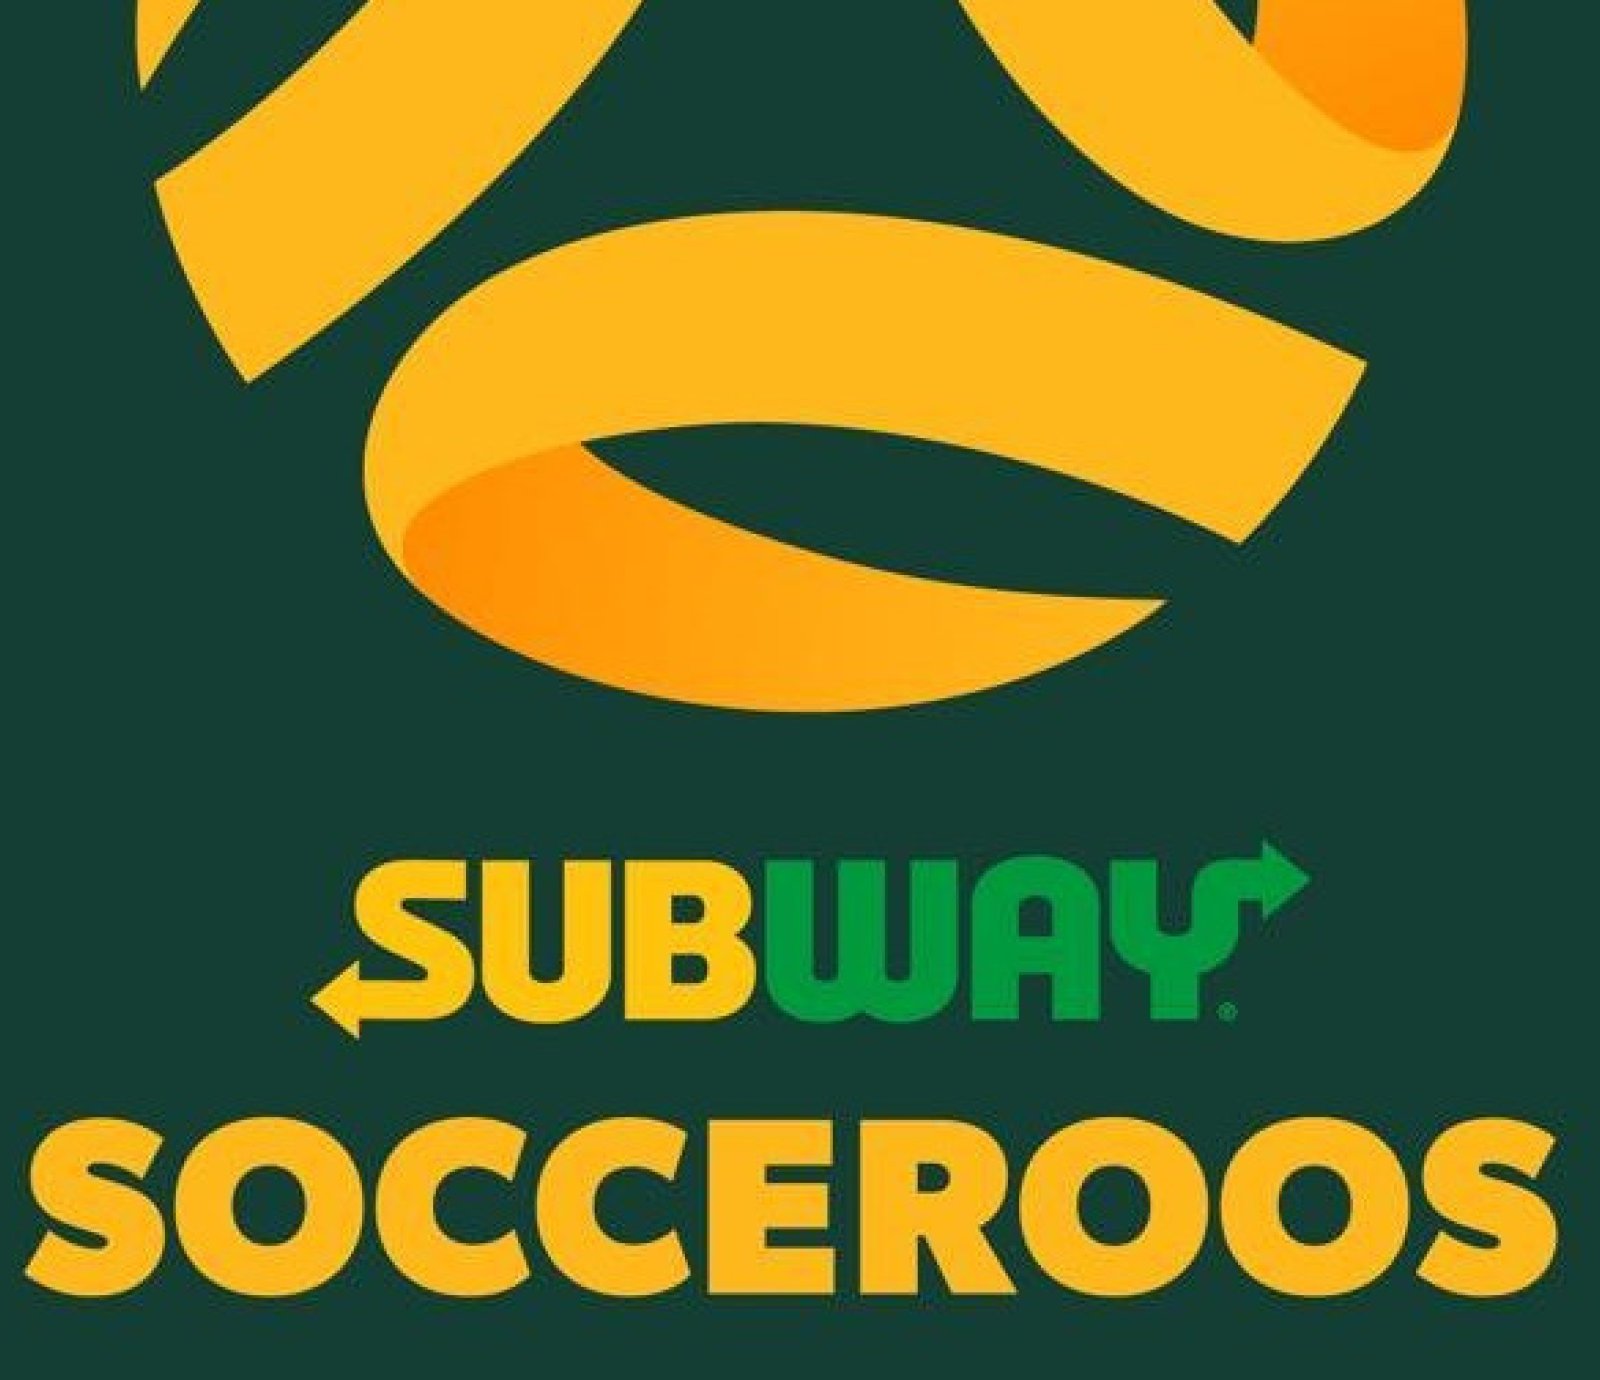 Subway Socceroos